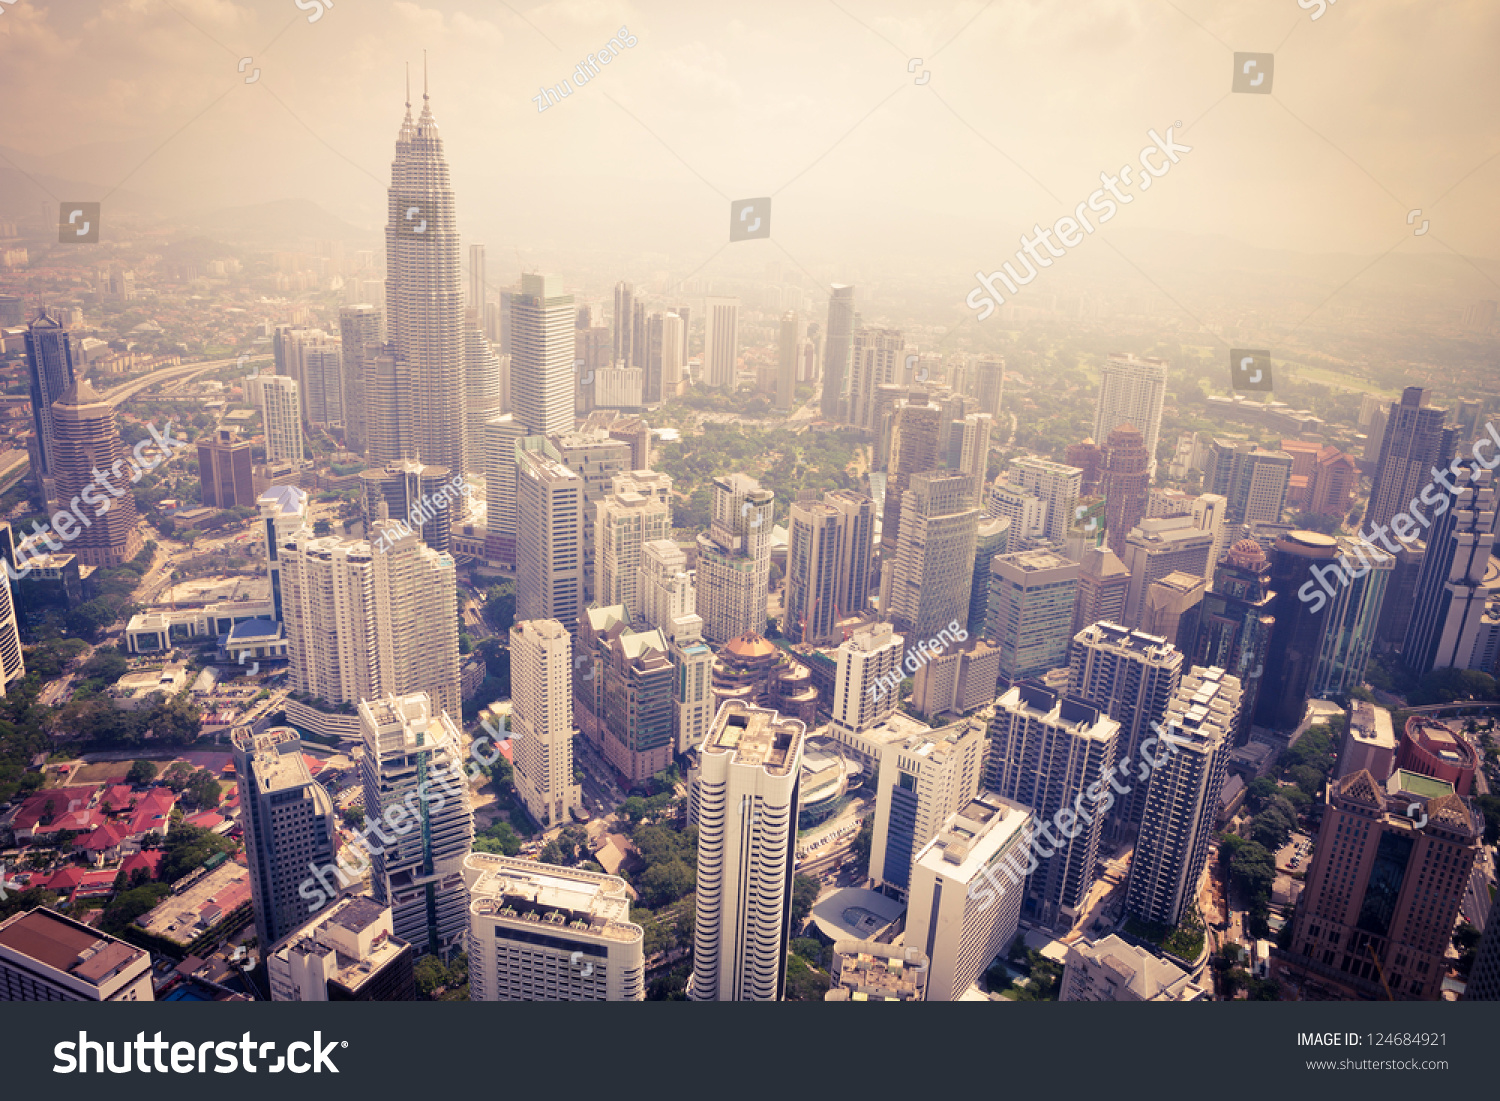 modern city in Kuala Lumpur #124684921